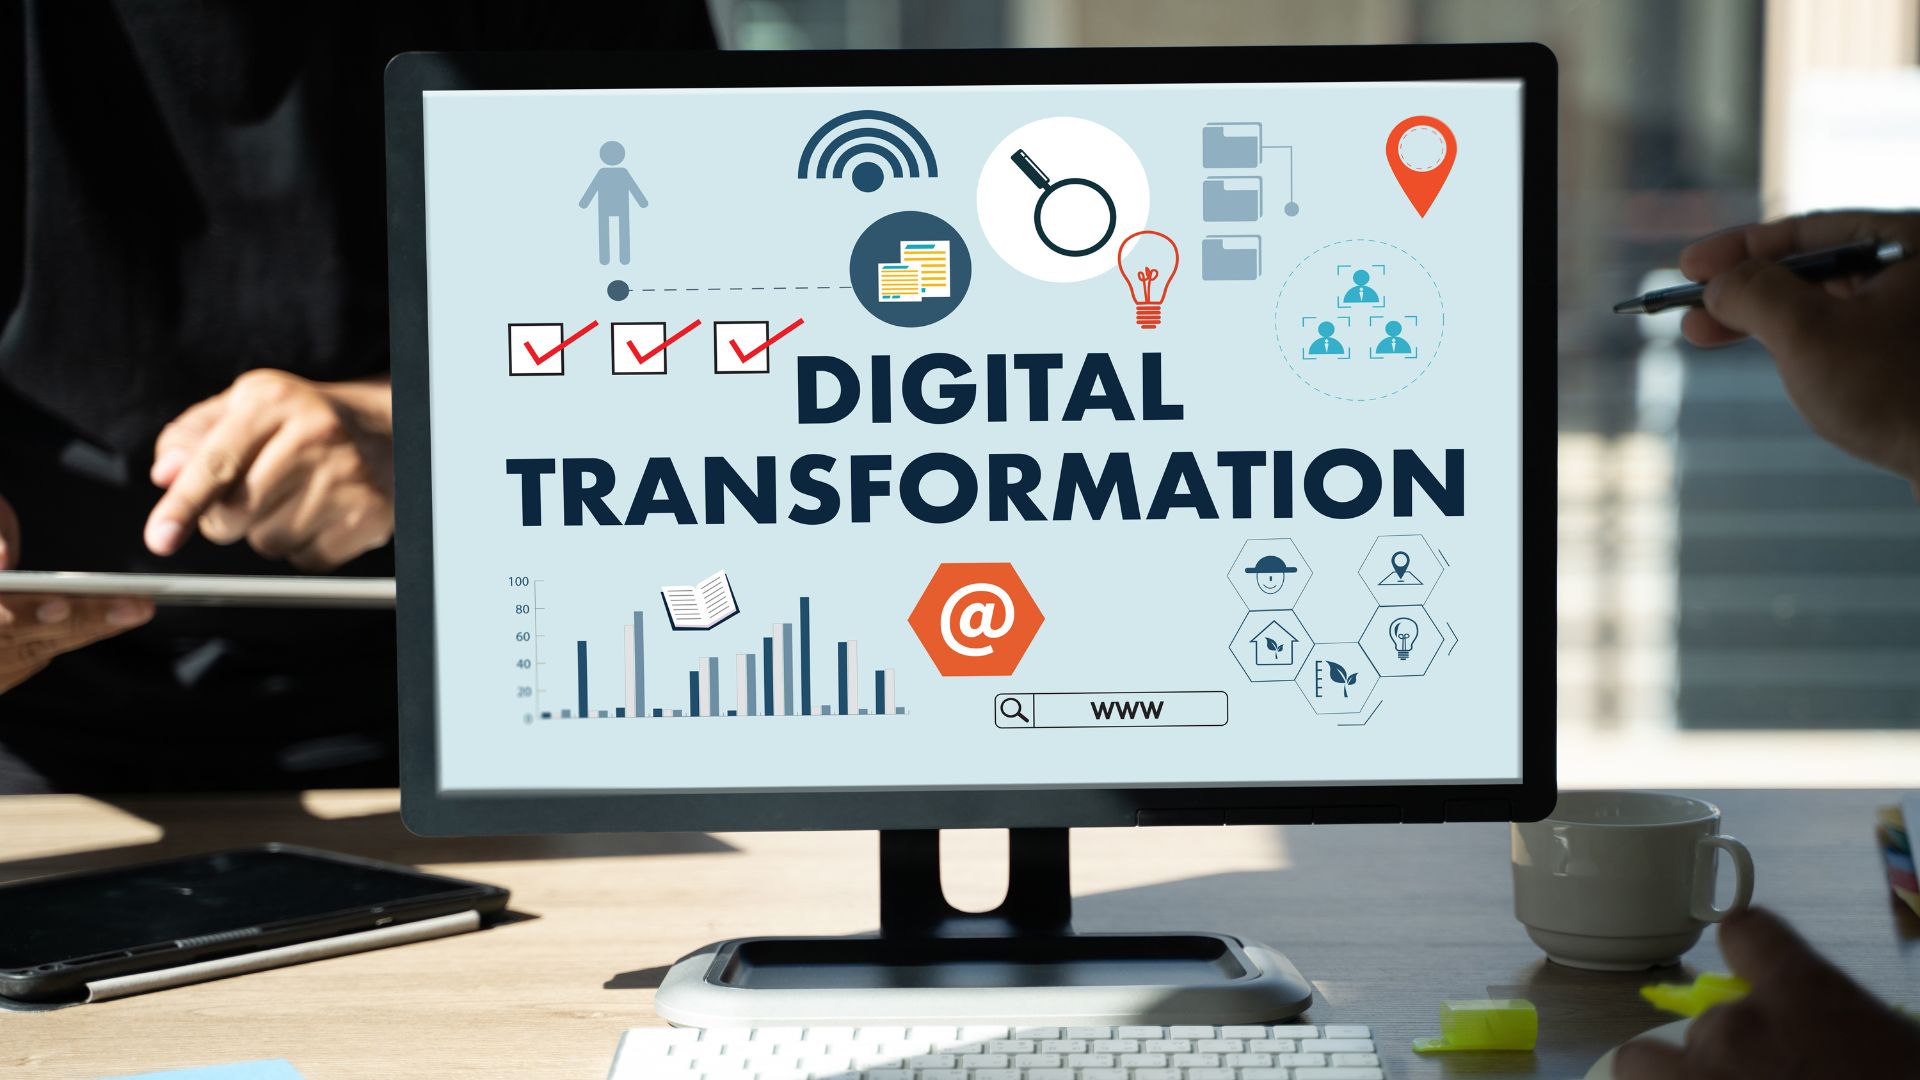 Digital Transformation - The Next Revolution